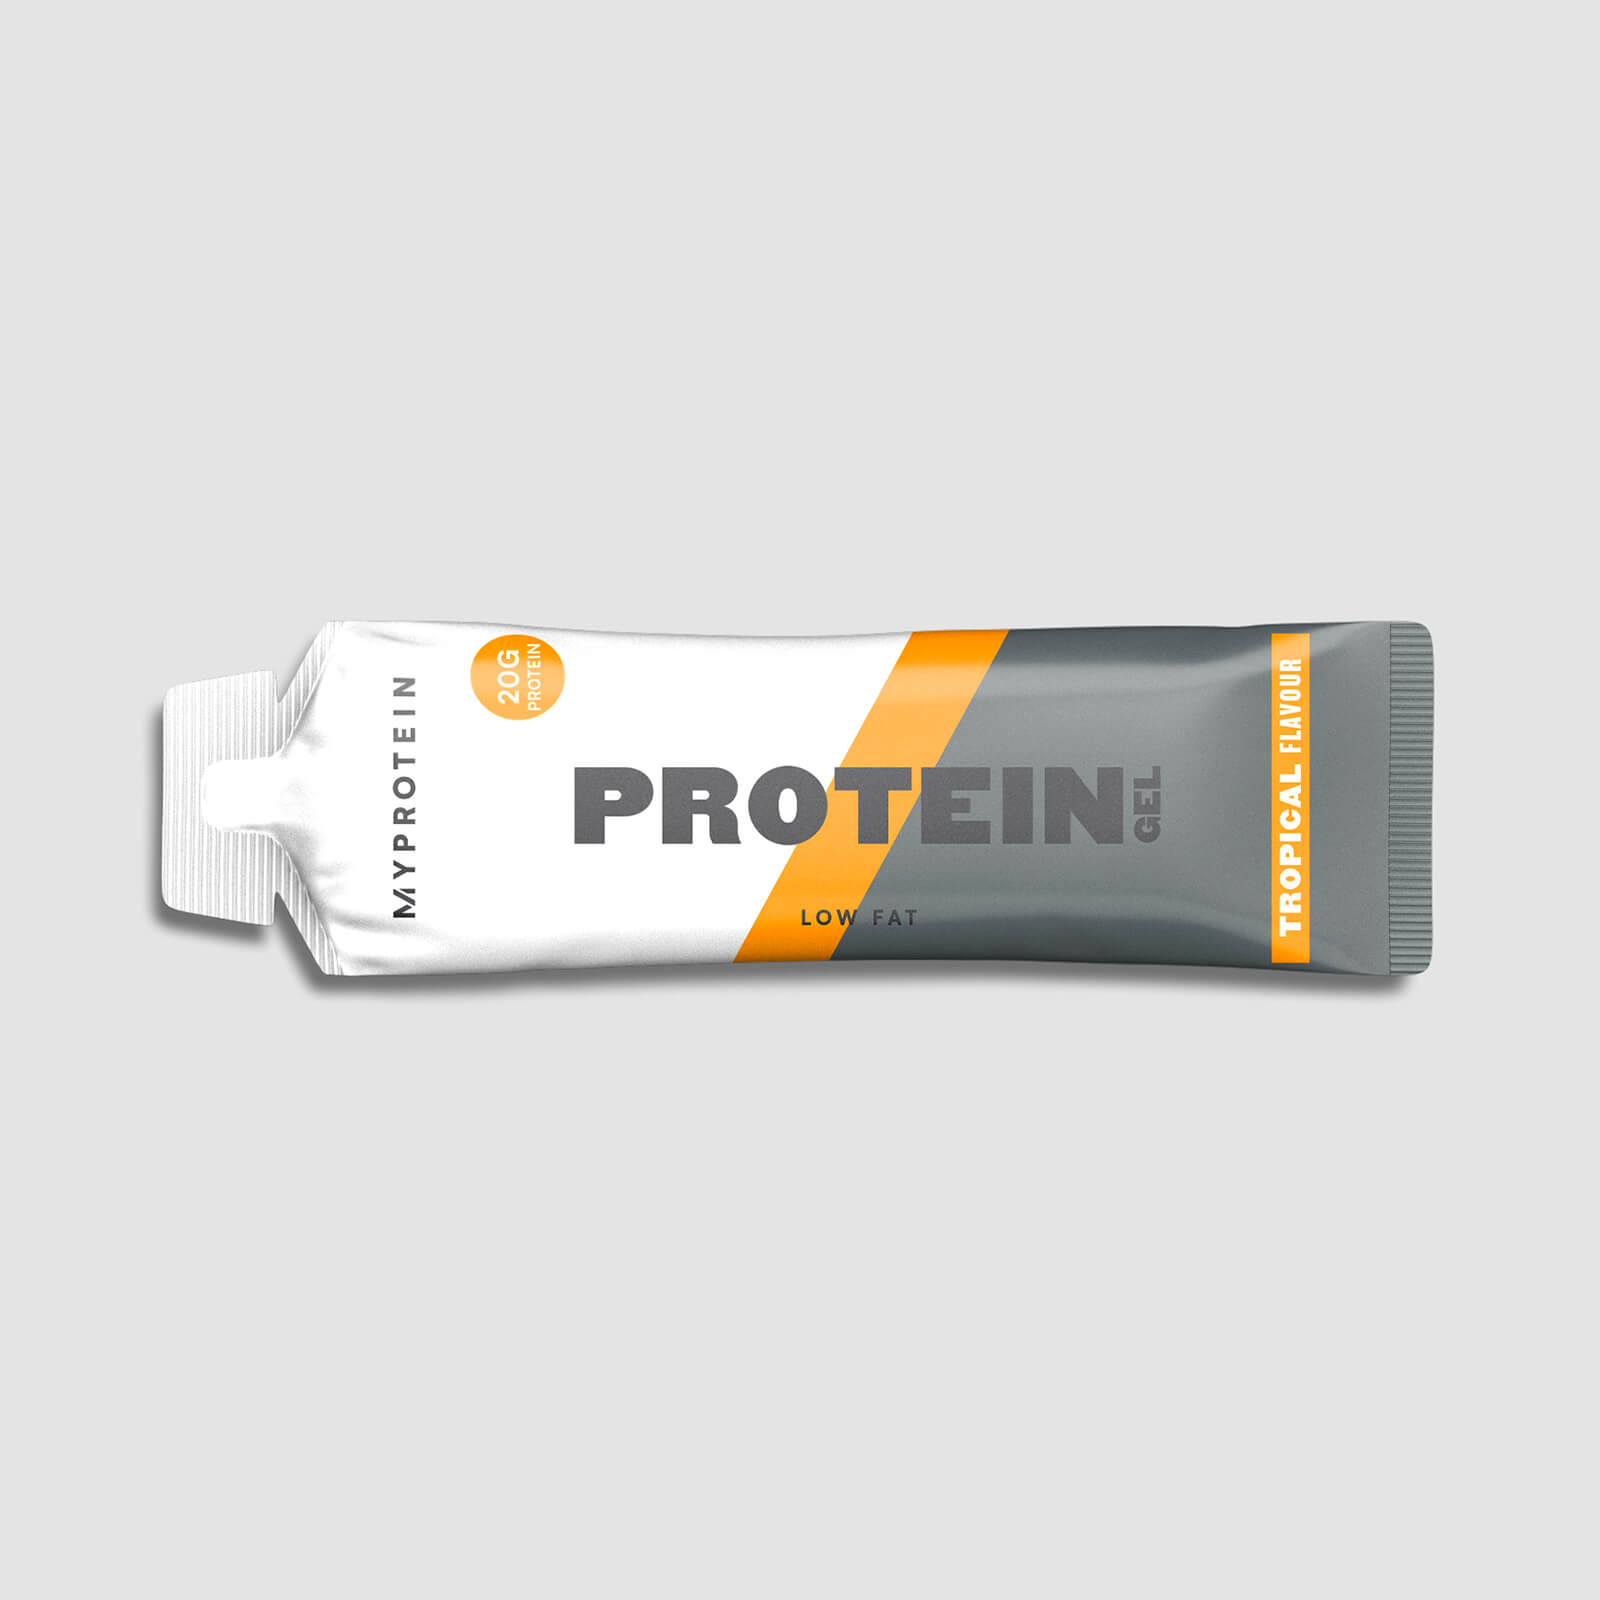 Protein Gel - ทรอพพิเคิล